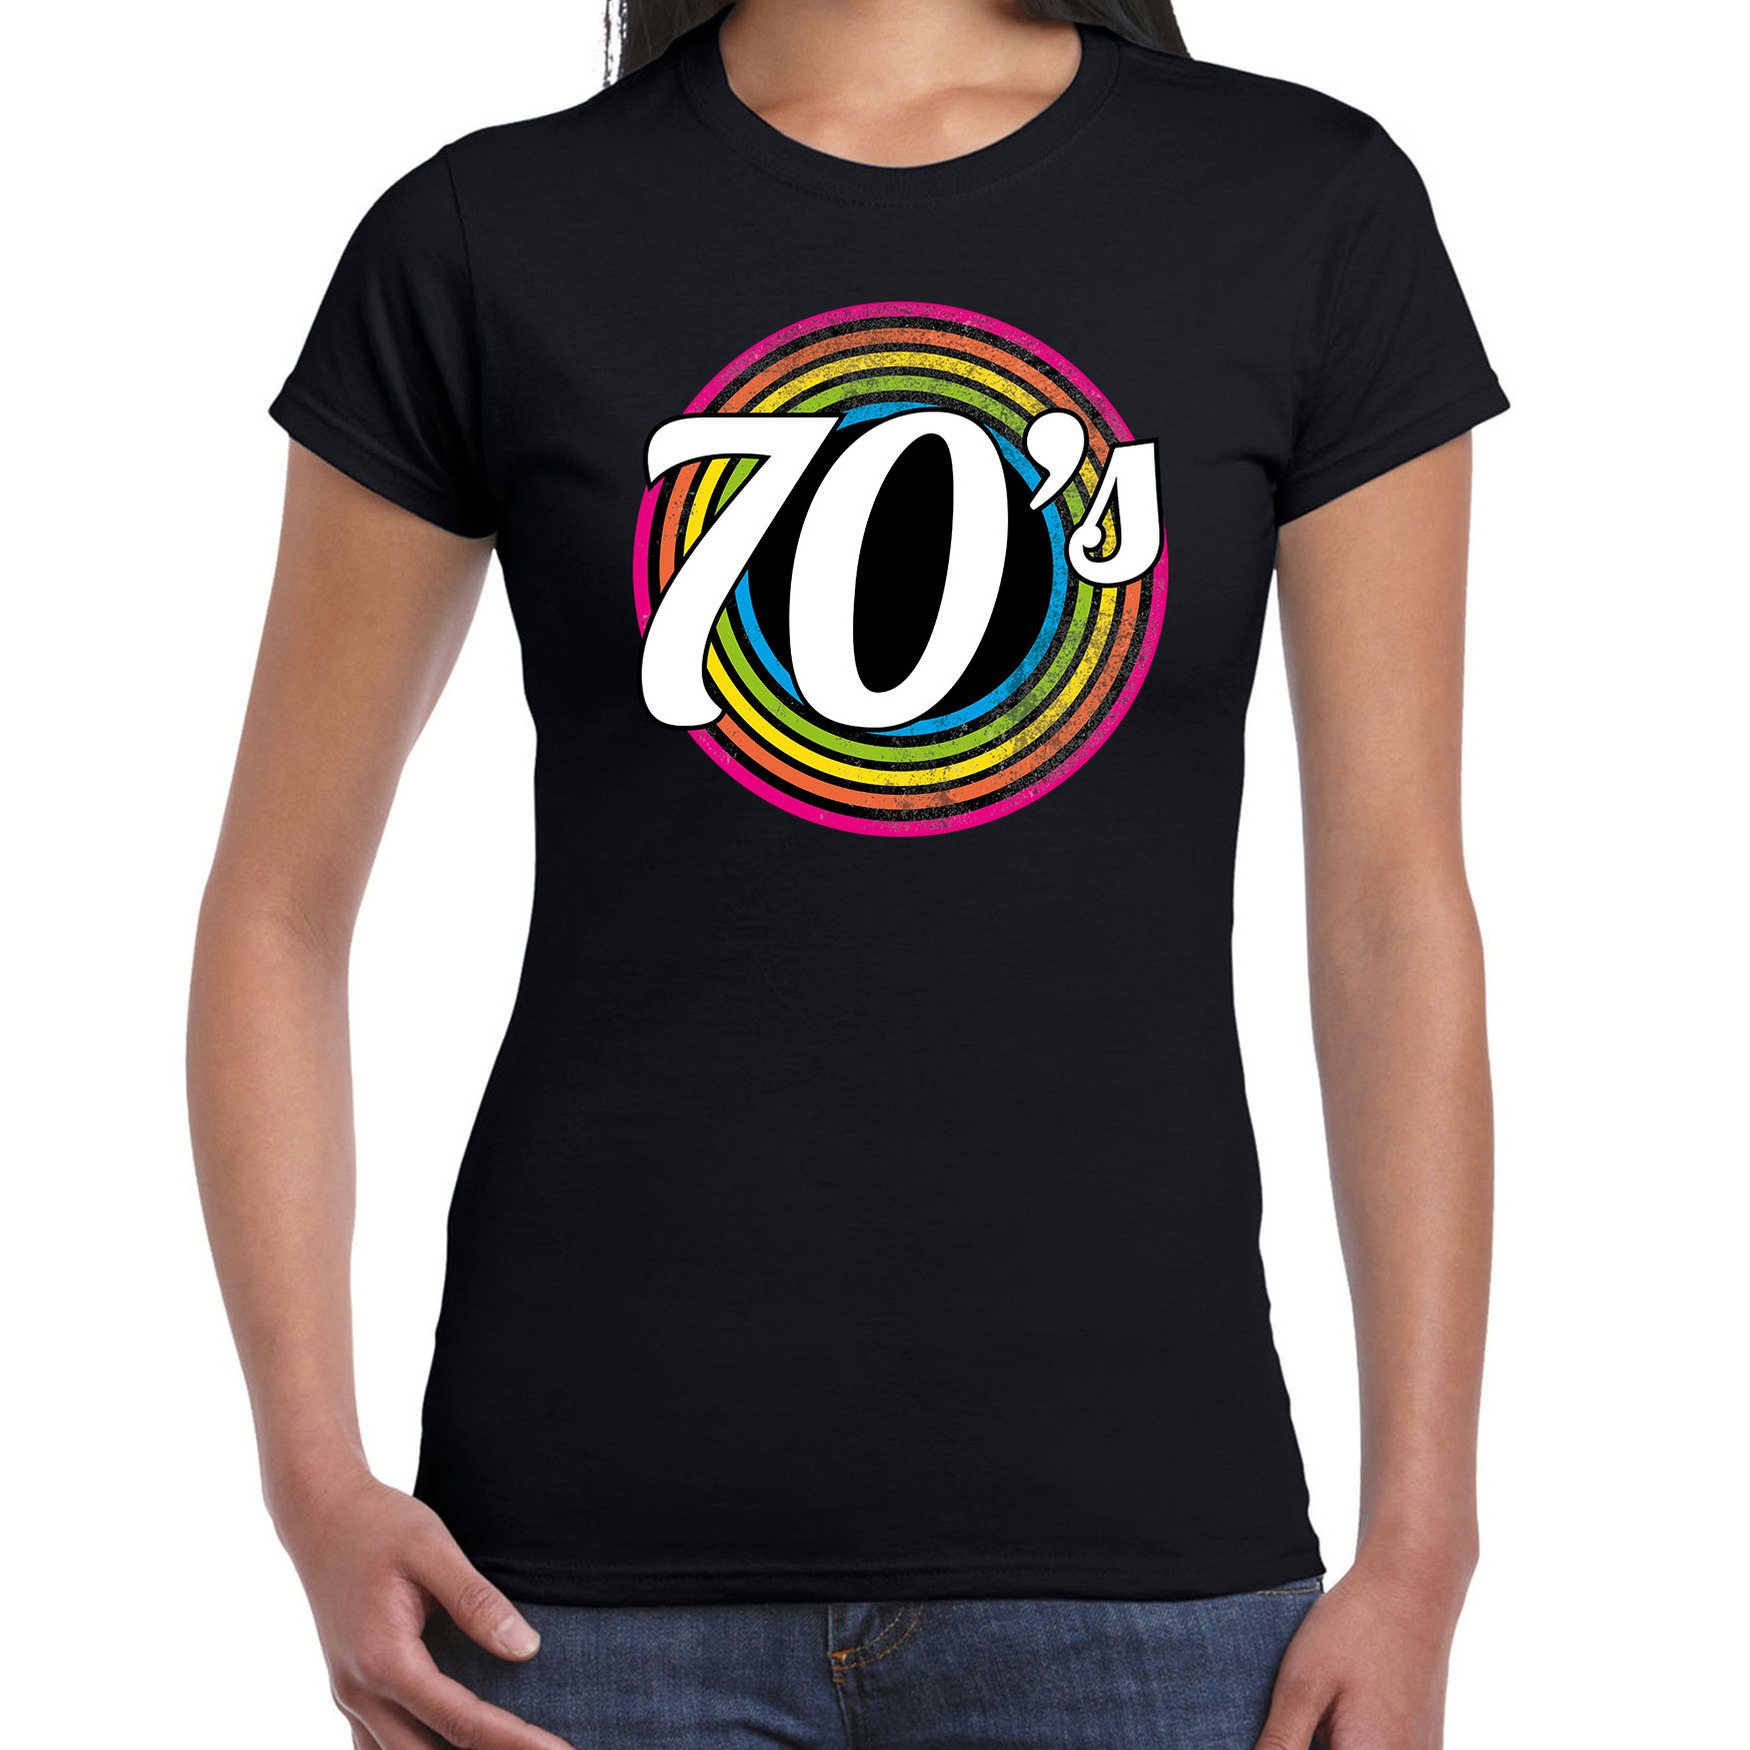 70s-seventies verkleed t-shirt zwart voor dames 70s, 80s party verkleed outfit